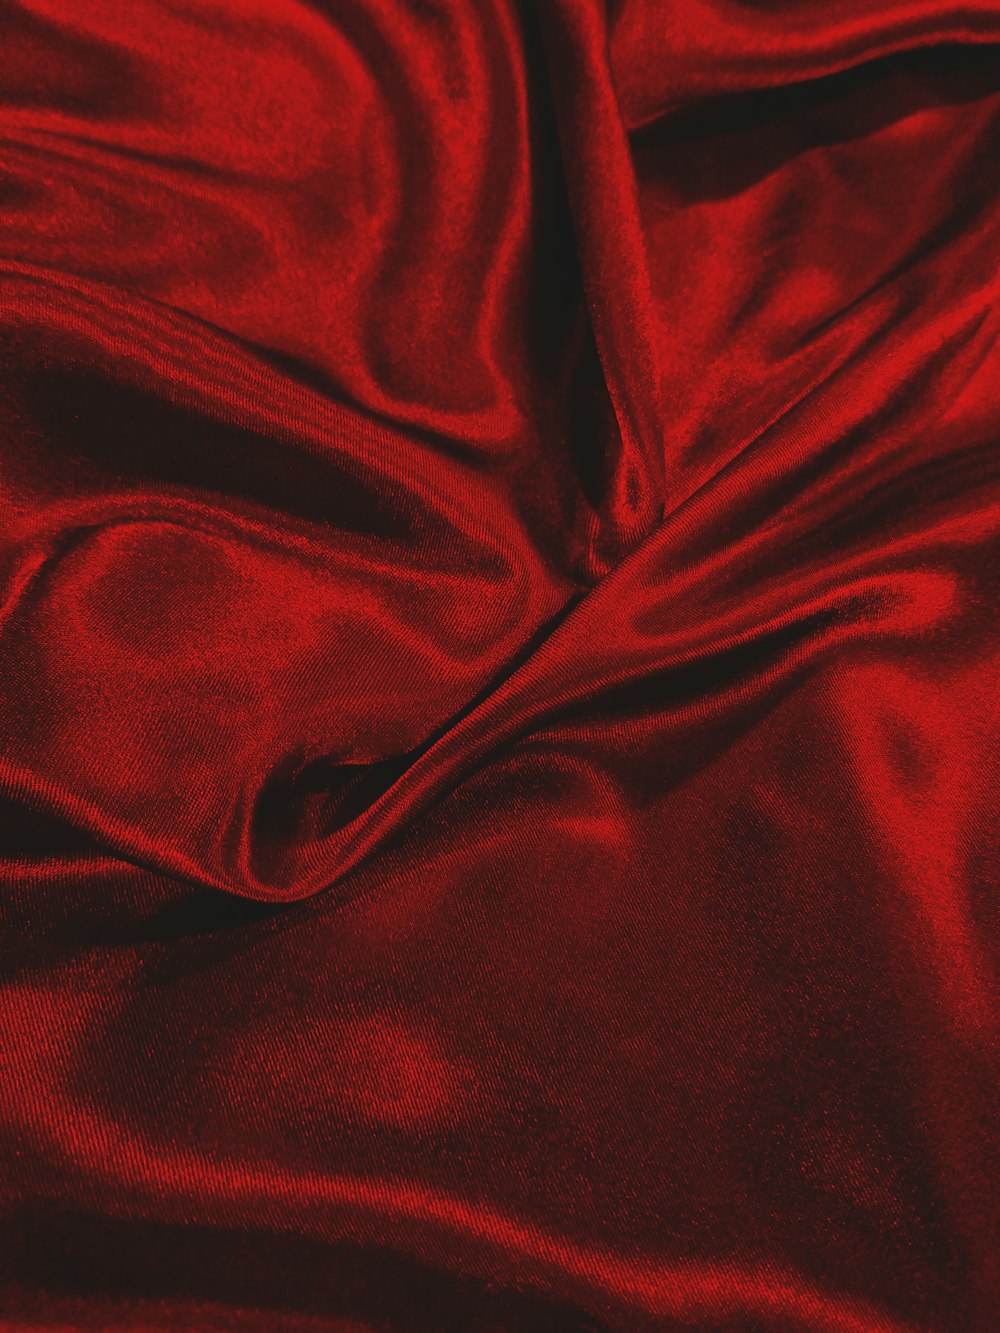 tecido vermelho